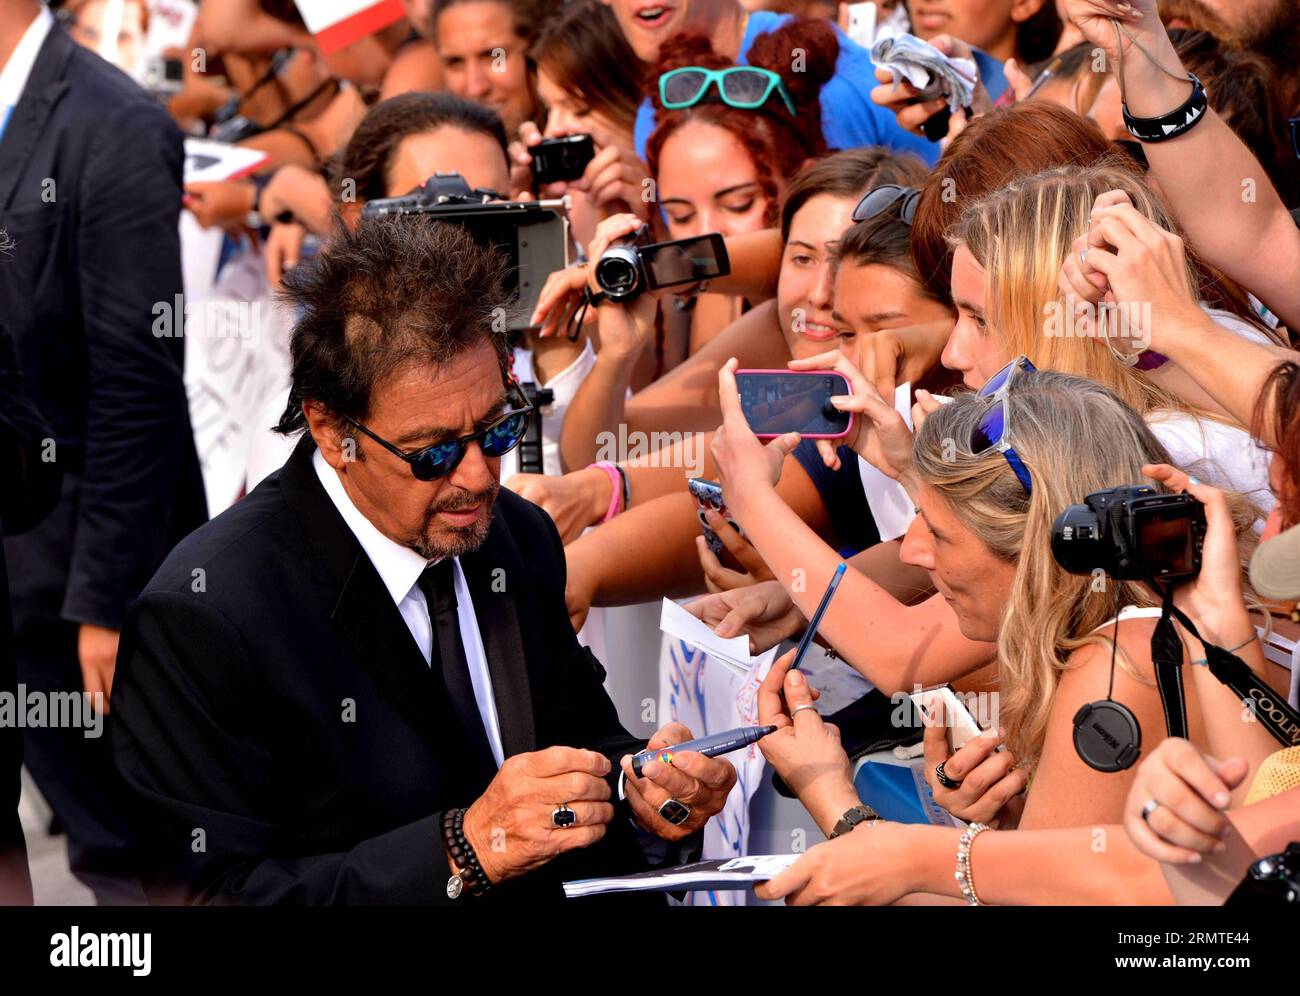 140830 -- VENISE, 30 août 2014 -- l'acteur Al Pacino de Manglehorn signe pour les fans lors du 71e Festival du film de Venise au Lido de Venise, Italie, le 30 août 2014. ITALIE-VENISE-FILM FESTIVAL-MANGLEHORN XuxNizhi PUBLICATIONxNOTxINxCHN Banque D'Images